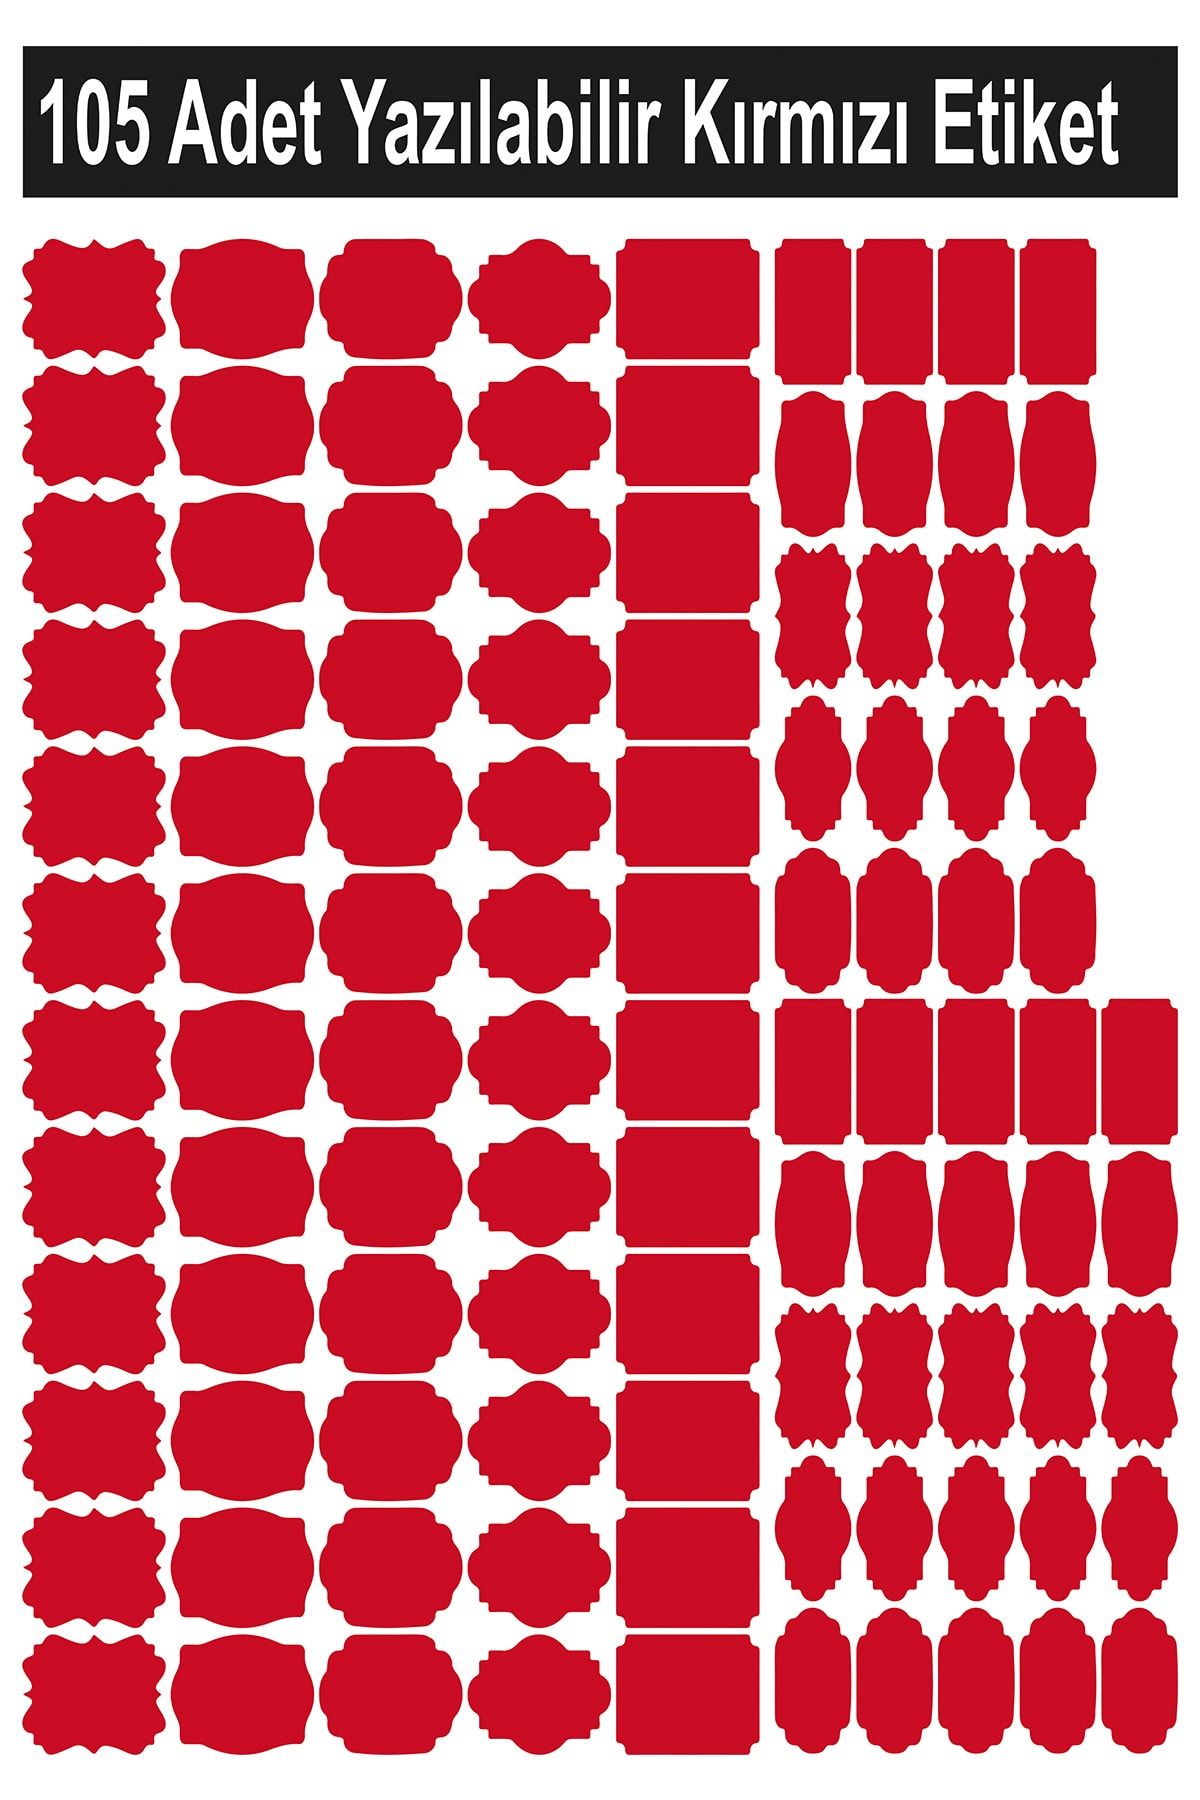 Smartad Kırmızı 105 Adet Yazılabilir Etiket , Kavanoz Sticker , Farklı Şekil Ve Farklı Boyutlarda Kırmızı